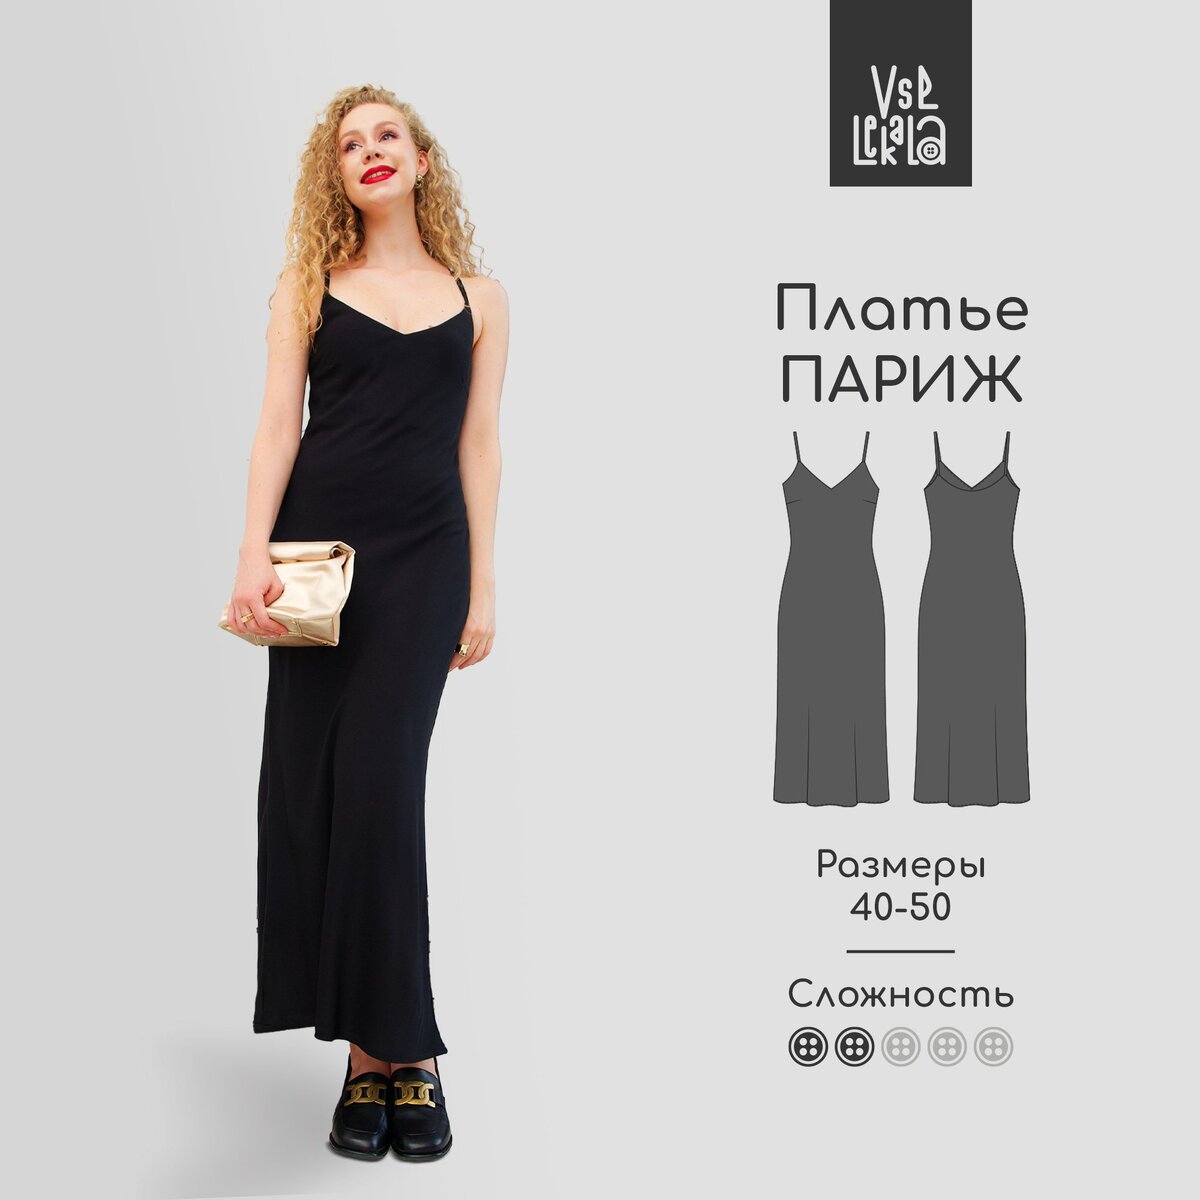 На сайте «Все Лекала» обновились бесплатные выкройки🎊. Подберите подходящие выкройки и шейте в свое удовольствие. 🪡 Выкройка платья-комбинации «Париж».